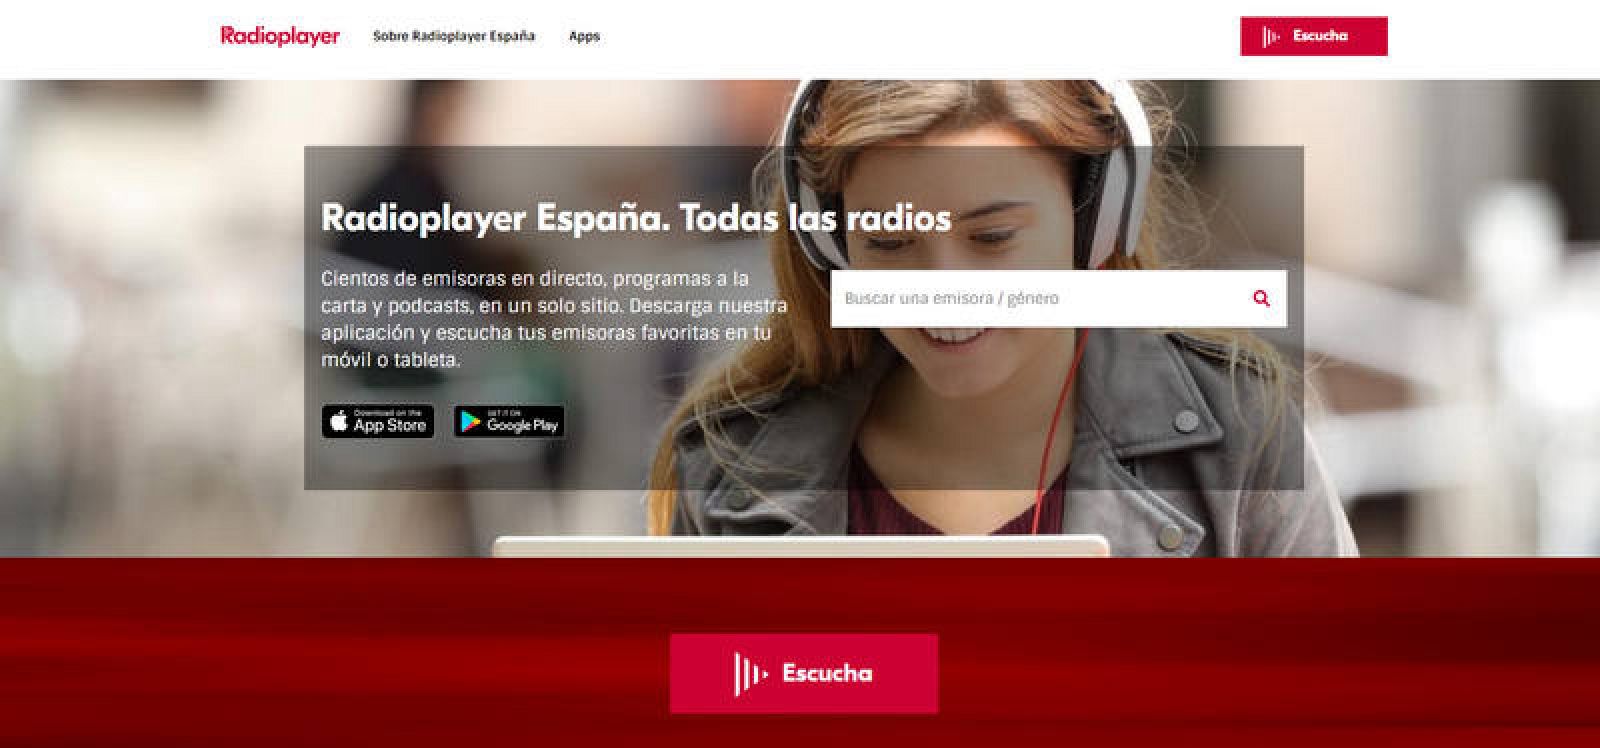 compañera de clases flotante gatito Las principales cadenas de radio españolas promueven Radioplayer España -  RTVE.es